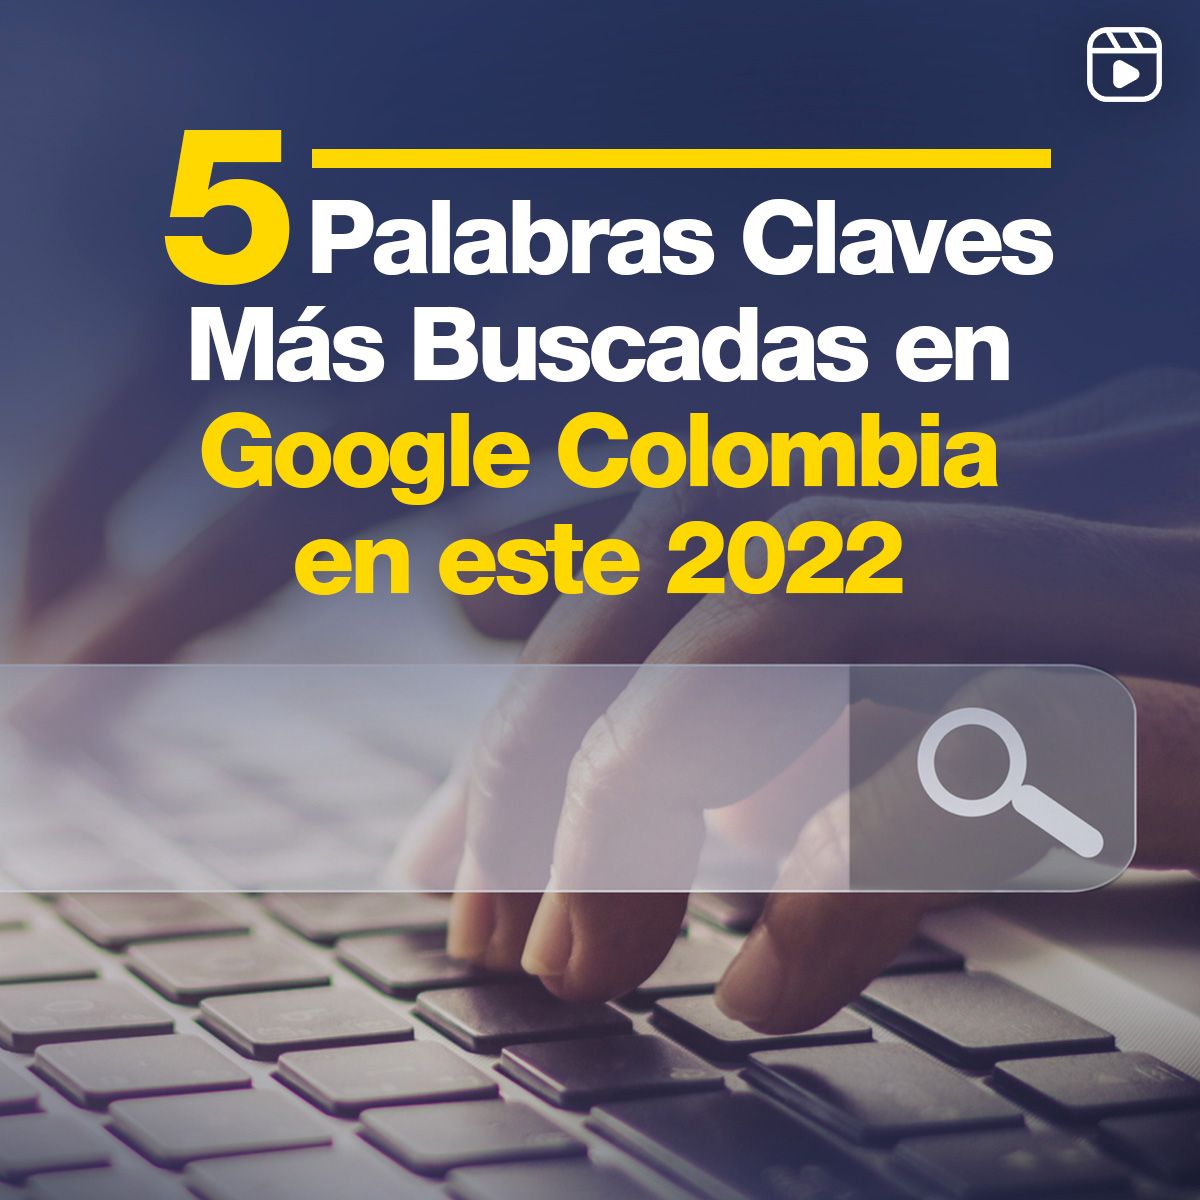 5 Palabras Claves Más Buscadas en Google Colombia en este 2022